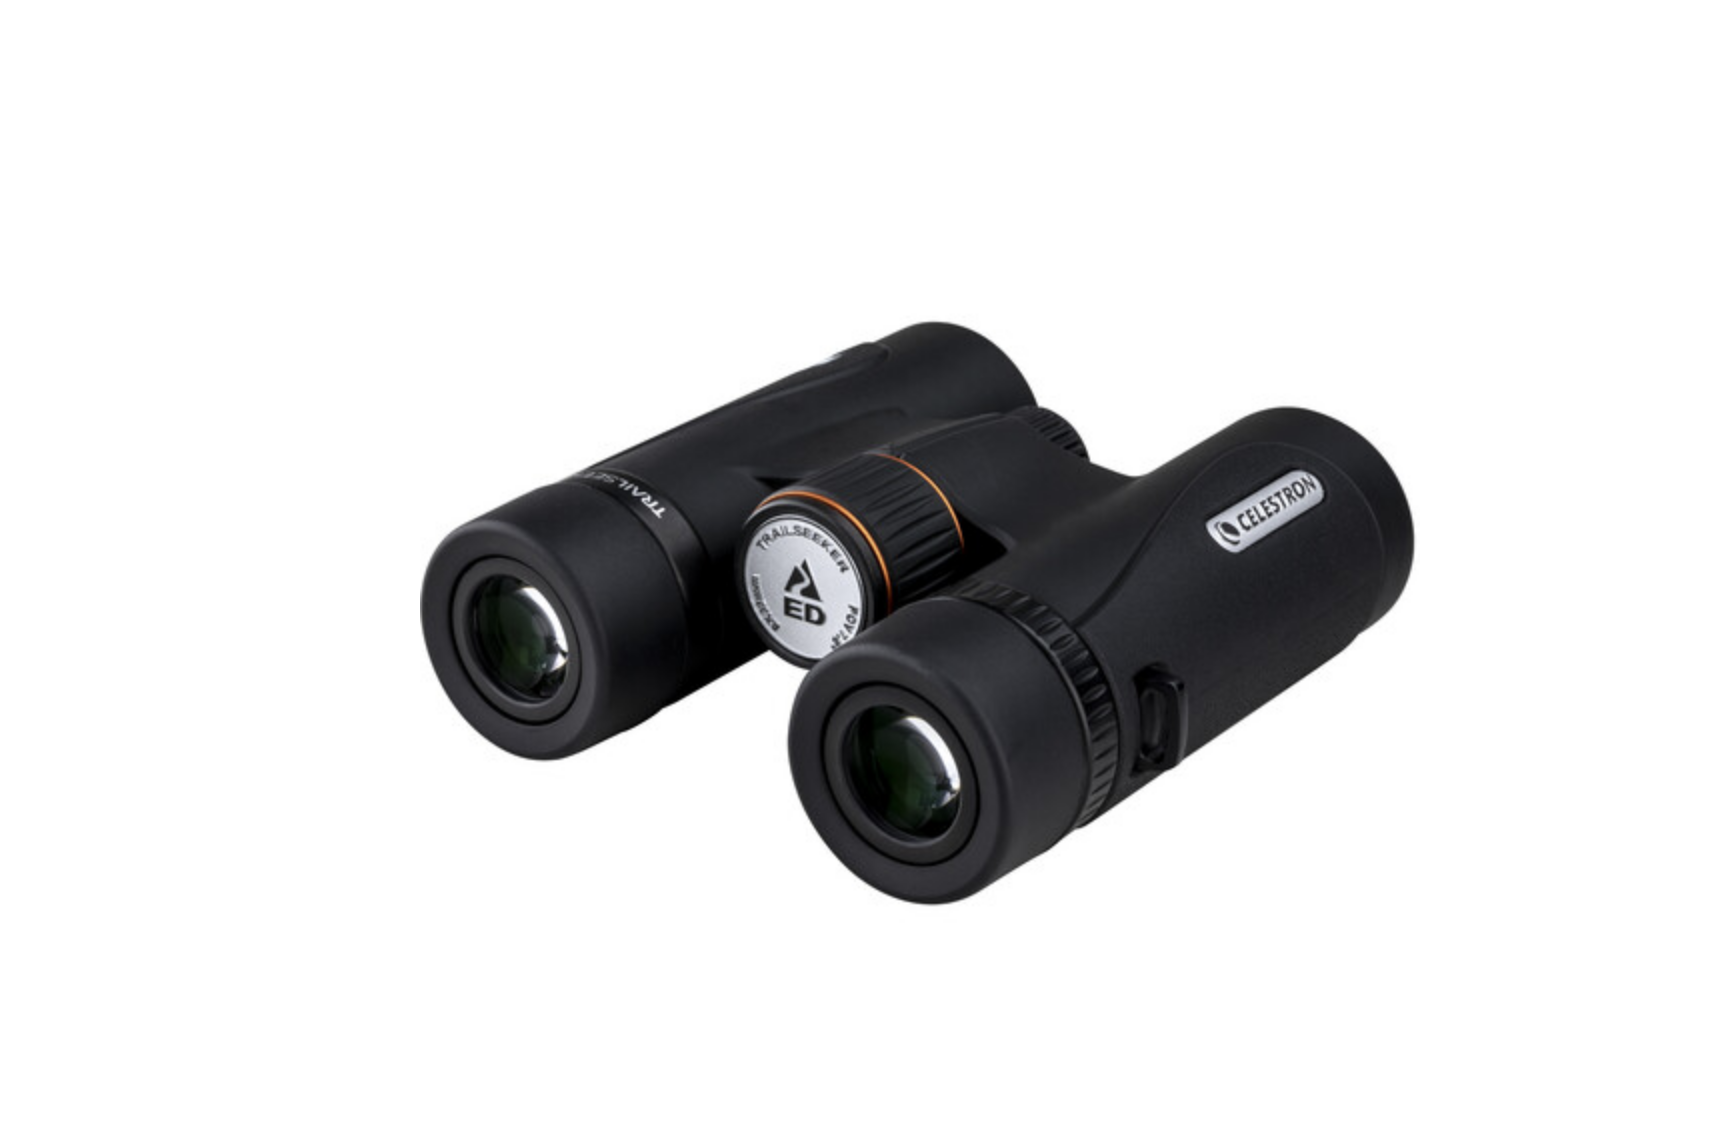 Celestron TrailSeeker ED Binoculars - Black